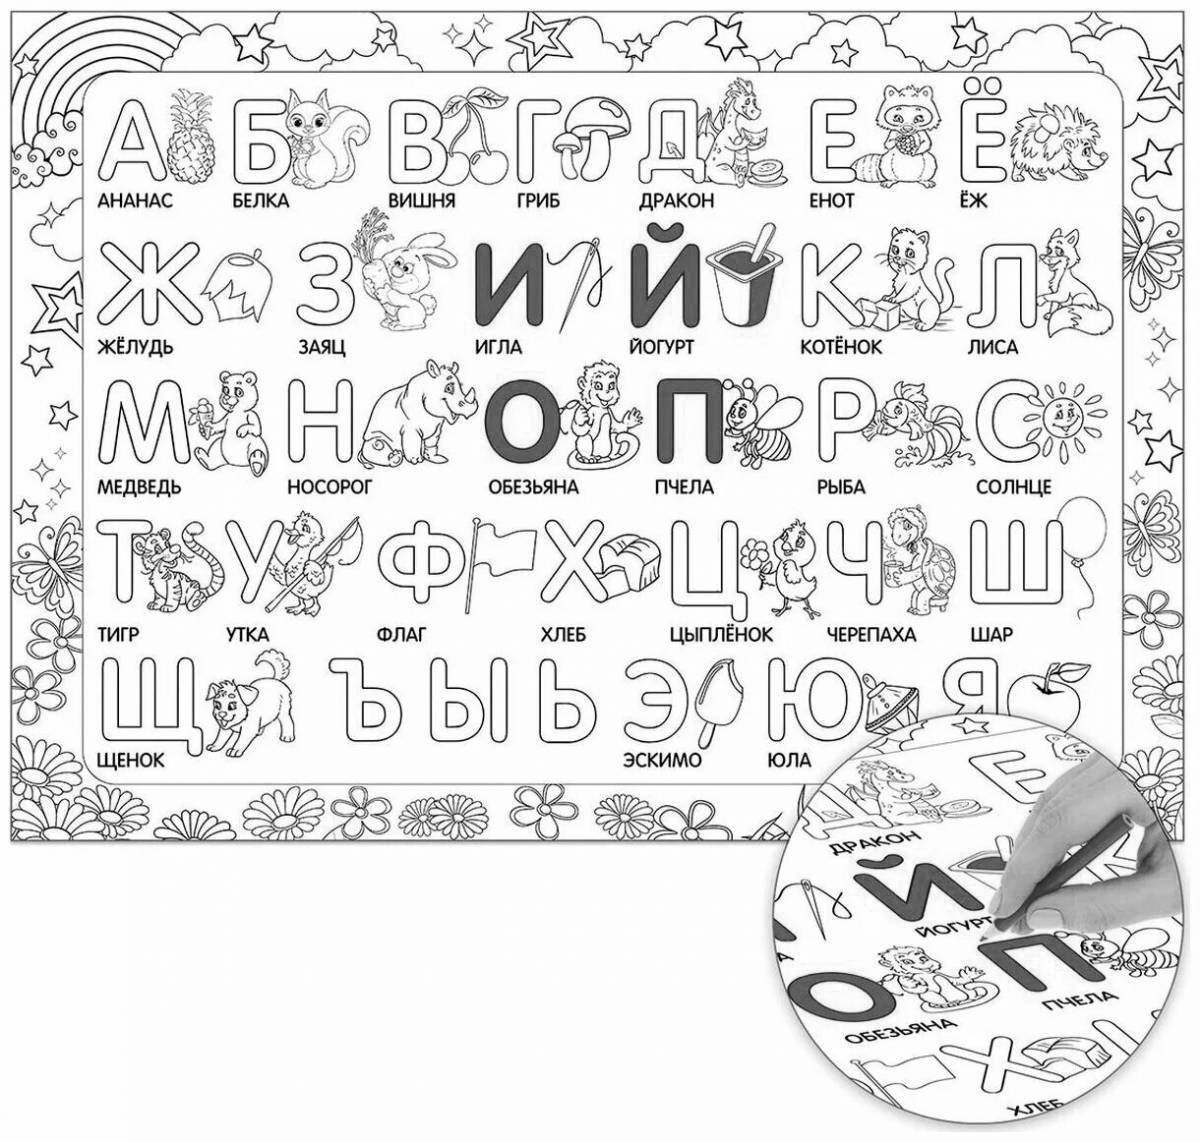 Exquisite coloring anti-stress alphabet